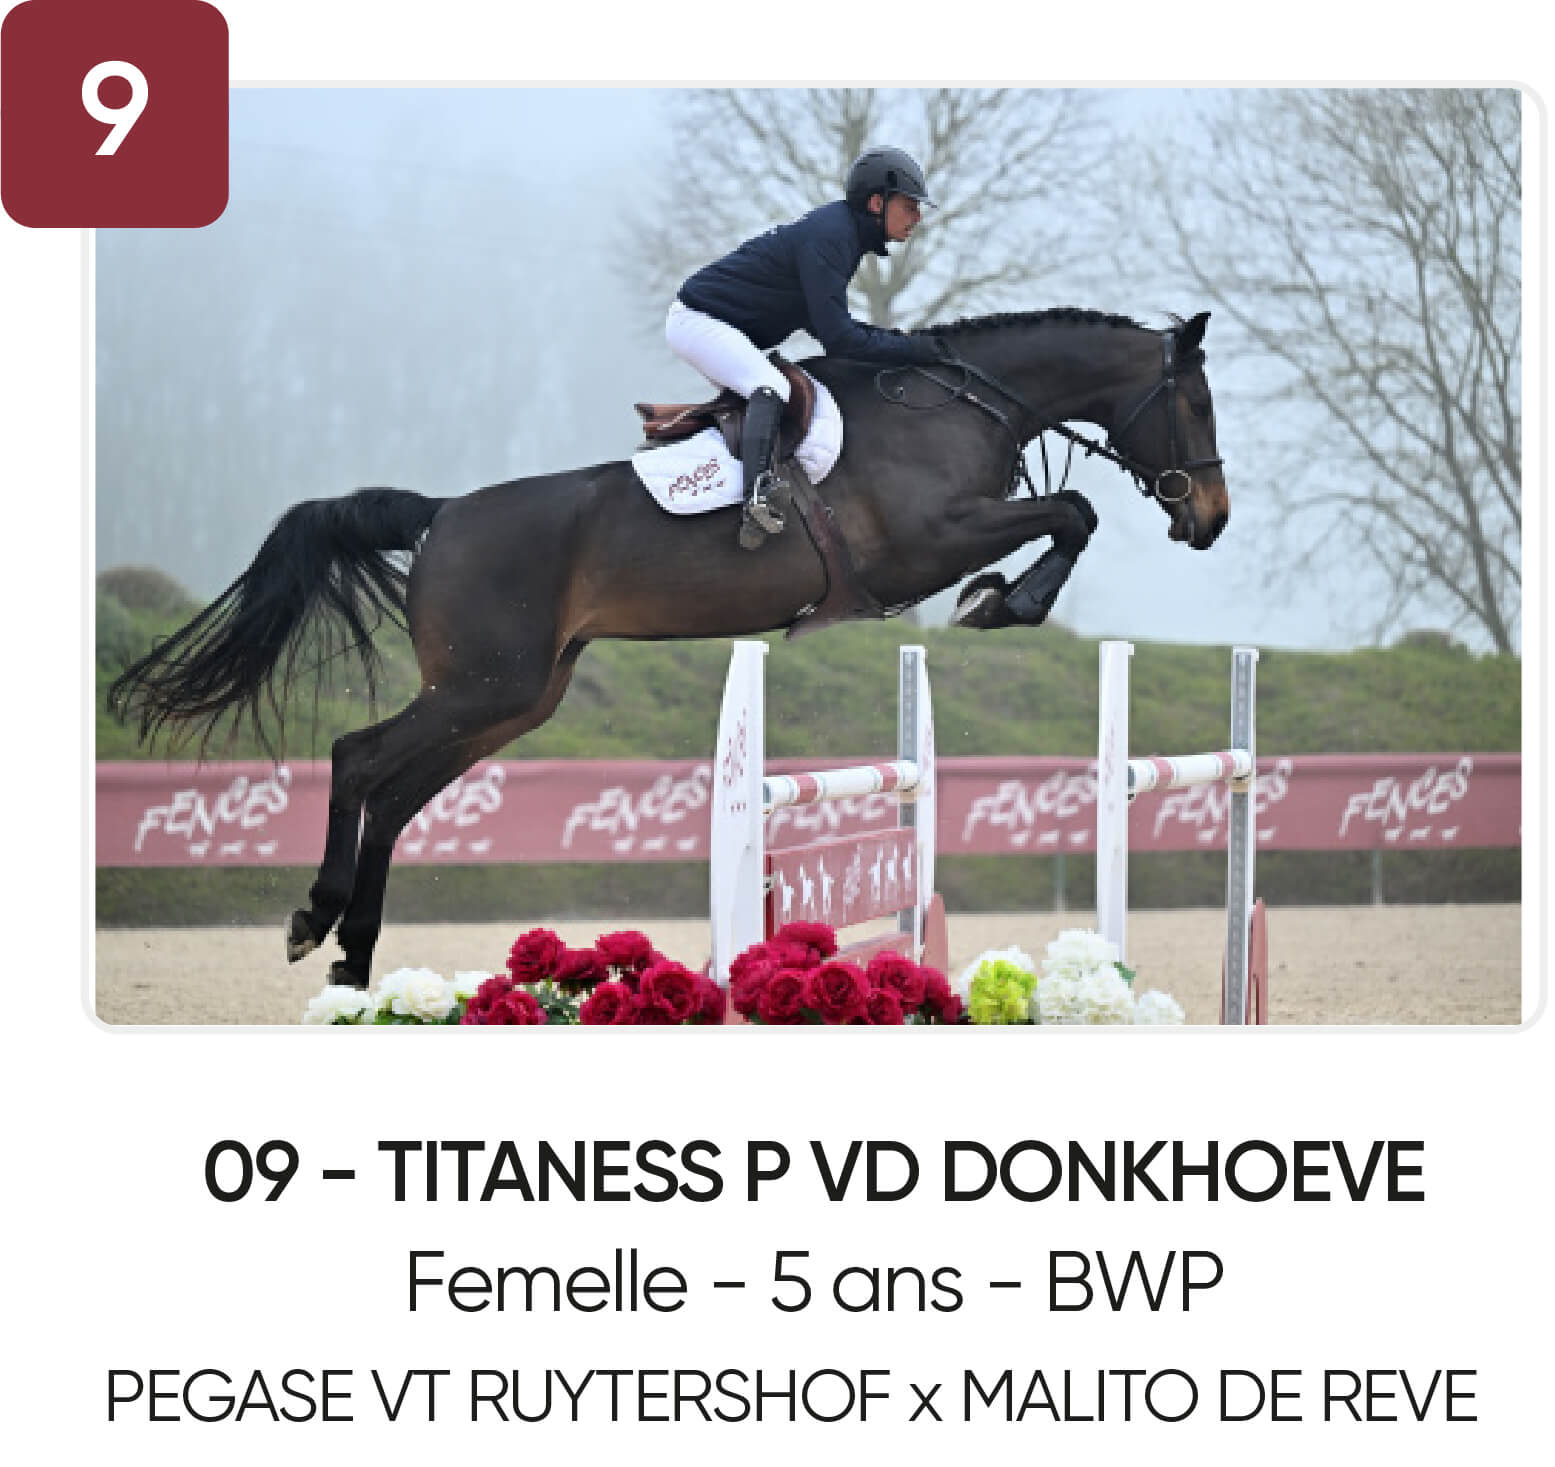 09 - TITANESS P VD DONKHOEVE